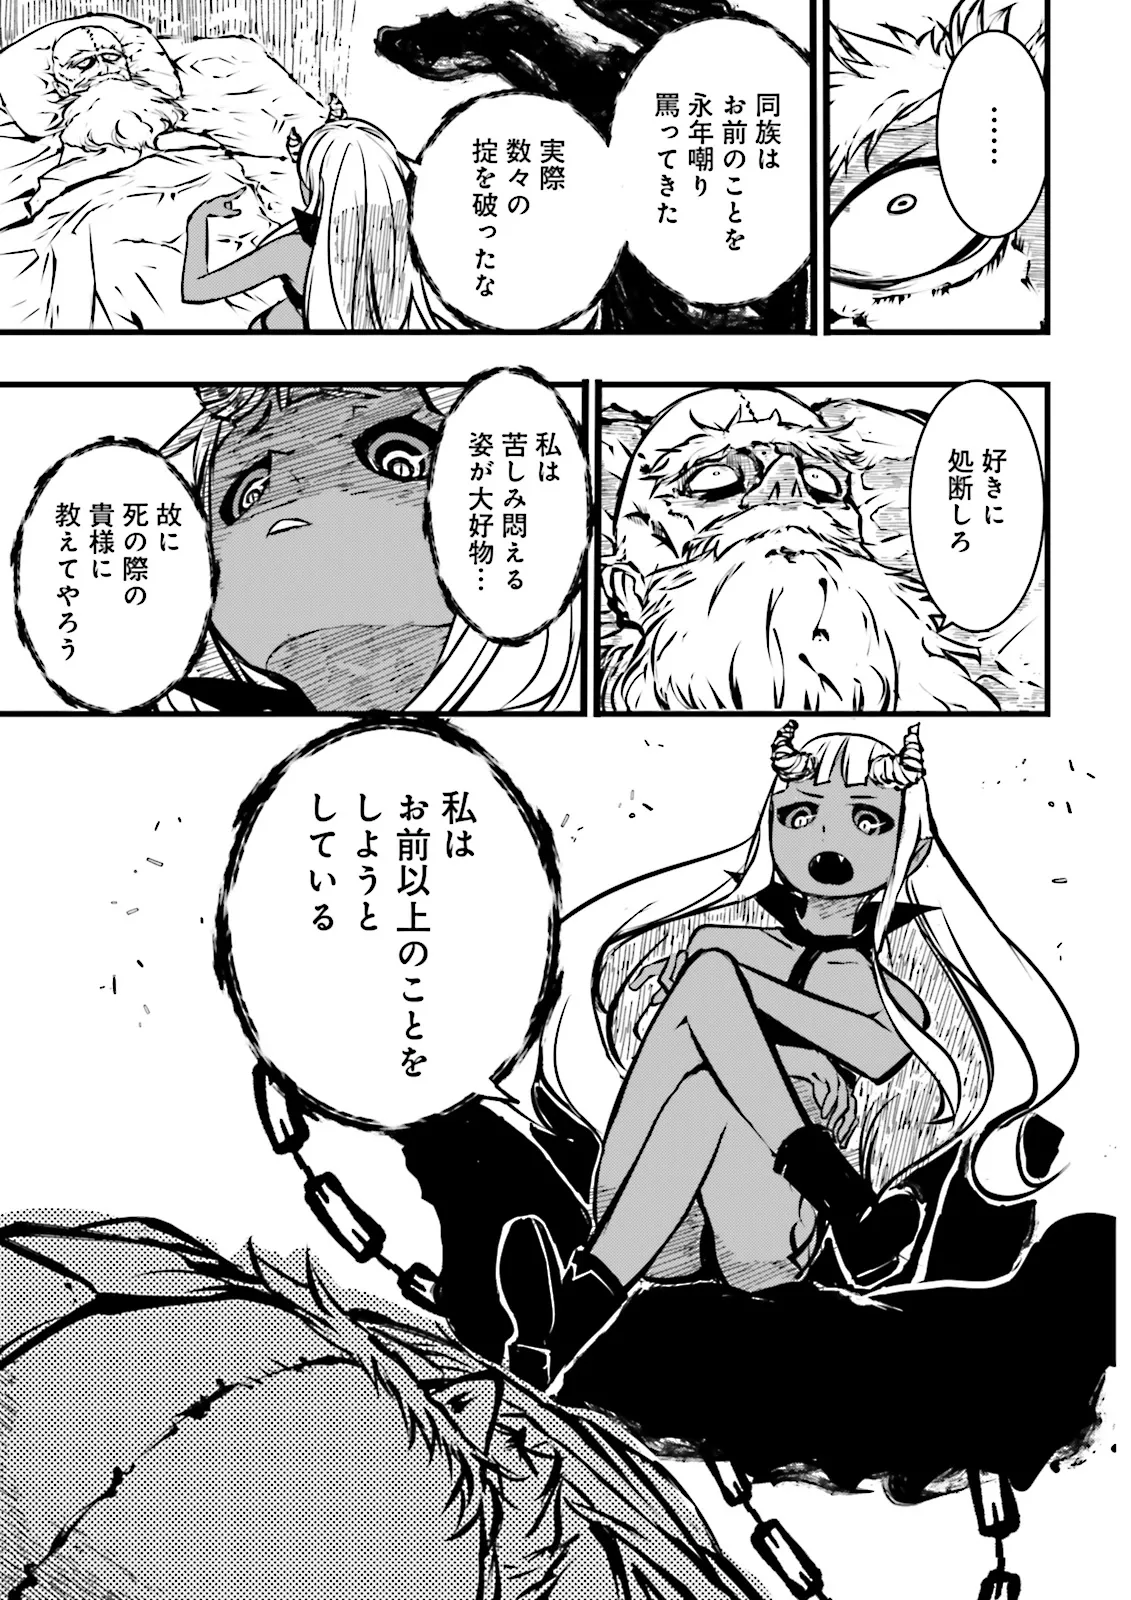 Sukiru Ga Nakereba Level wo Ageru ~ 99 Ga Kansuto No Sekai De Reberu 800 Man Kara Sutato ~ - Chapter 40.3 - Page 9